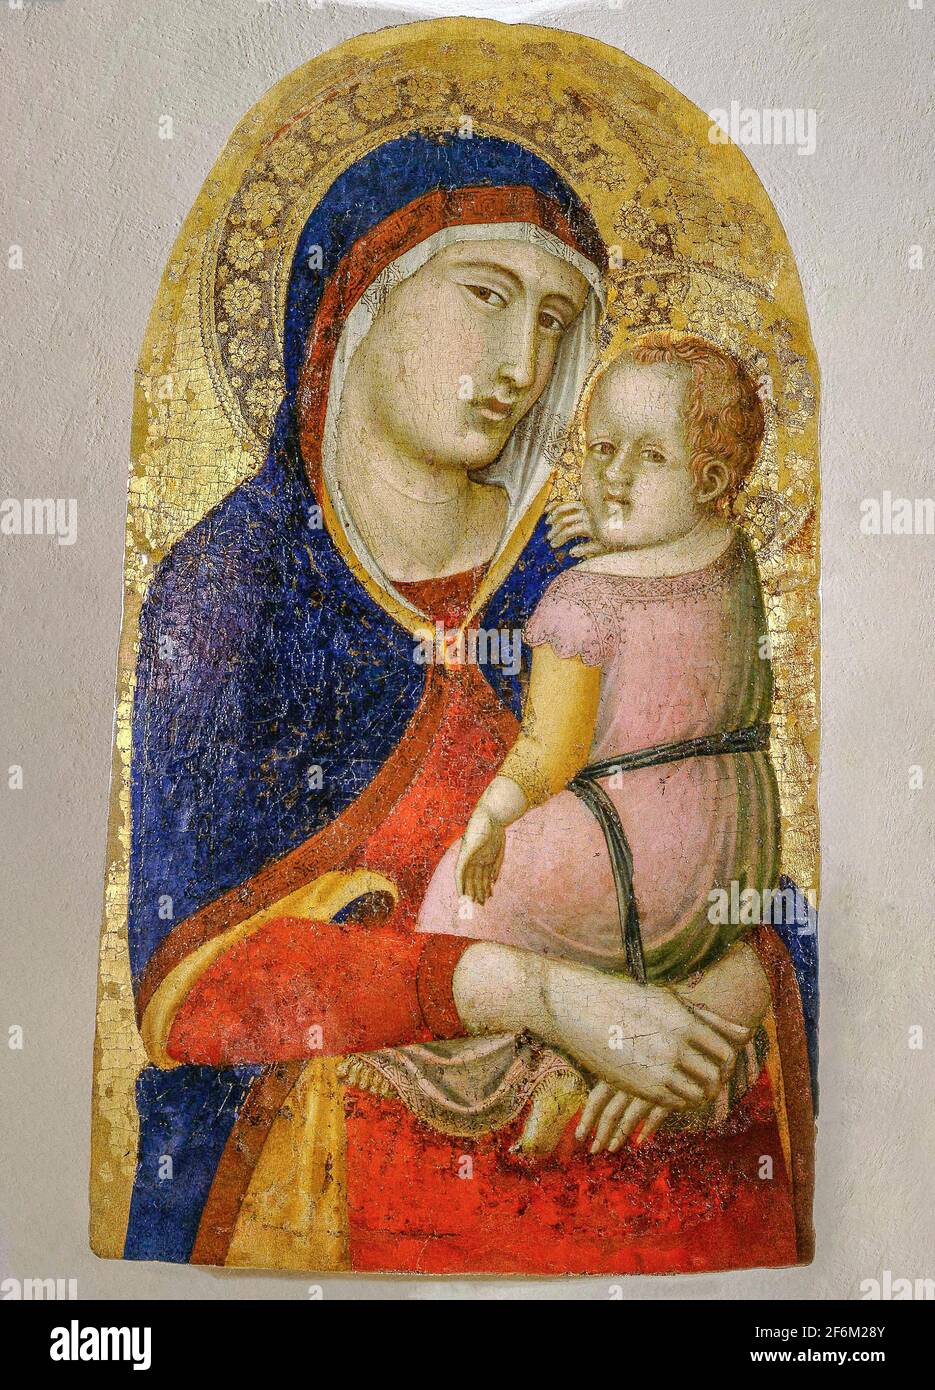 Italia ,Toscana Buonconvento Museo di Arte Sacra della Val d'Arbia 'Madonna con Bambino' di Pietro Lorenzetti prima del 1348 Foto Stock